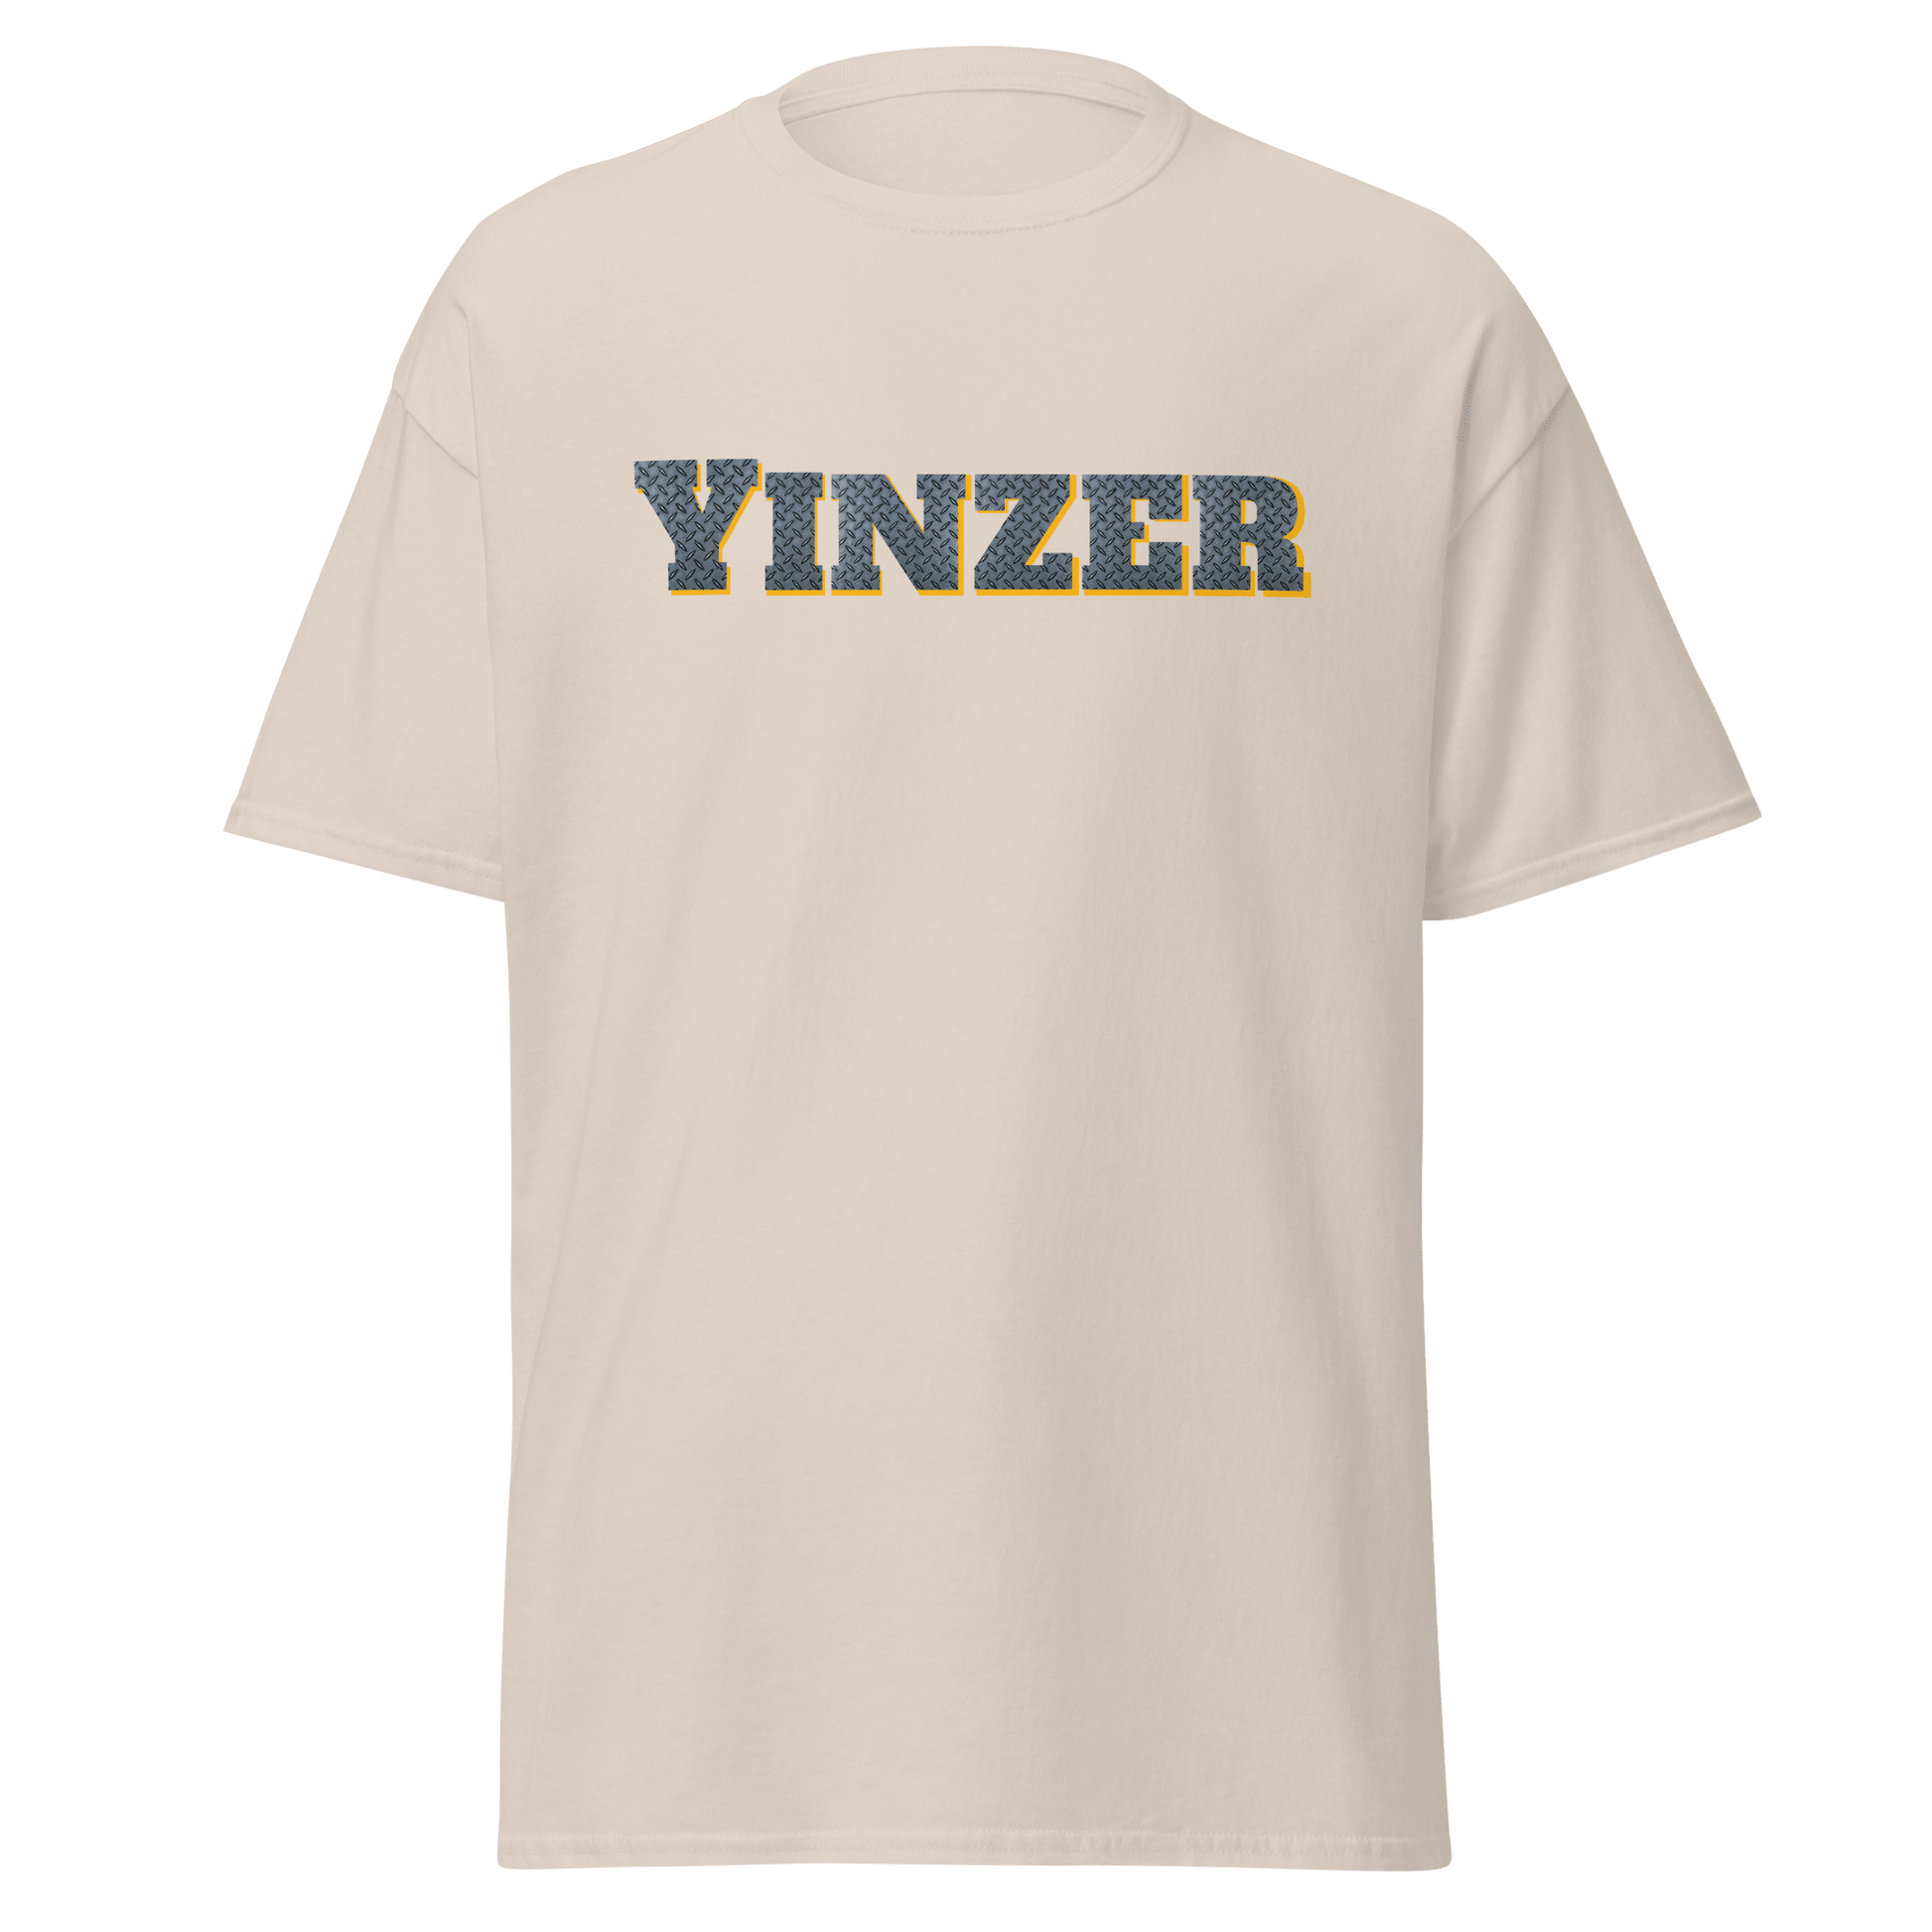 Steel Yinzer T-Shirt - Burgh Proud Yinzergear Natural S 